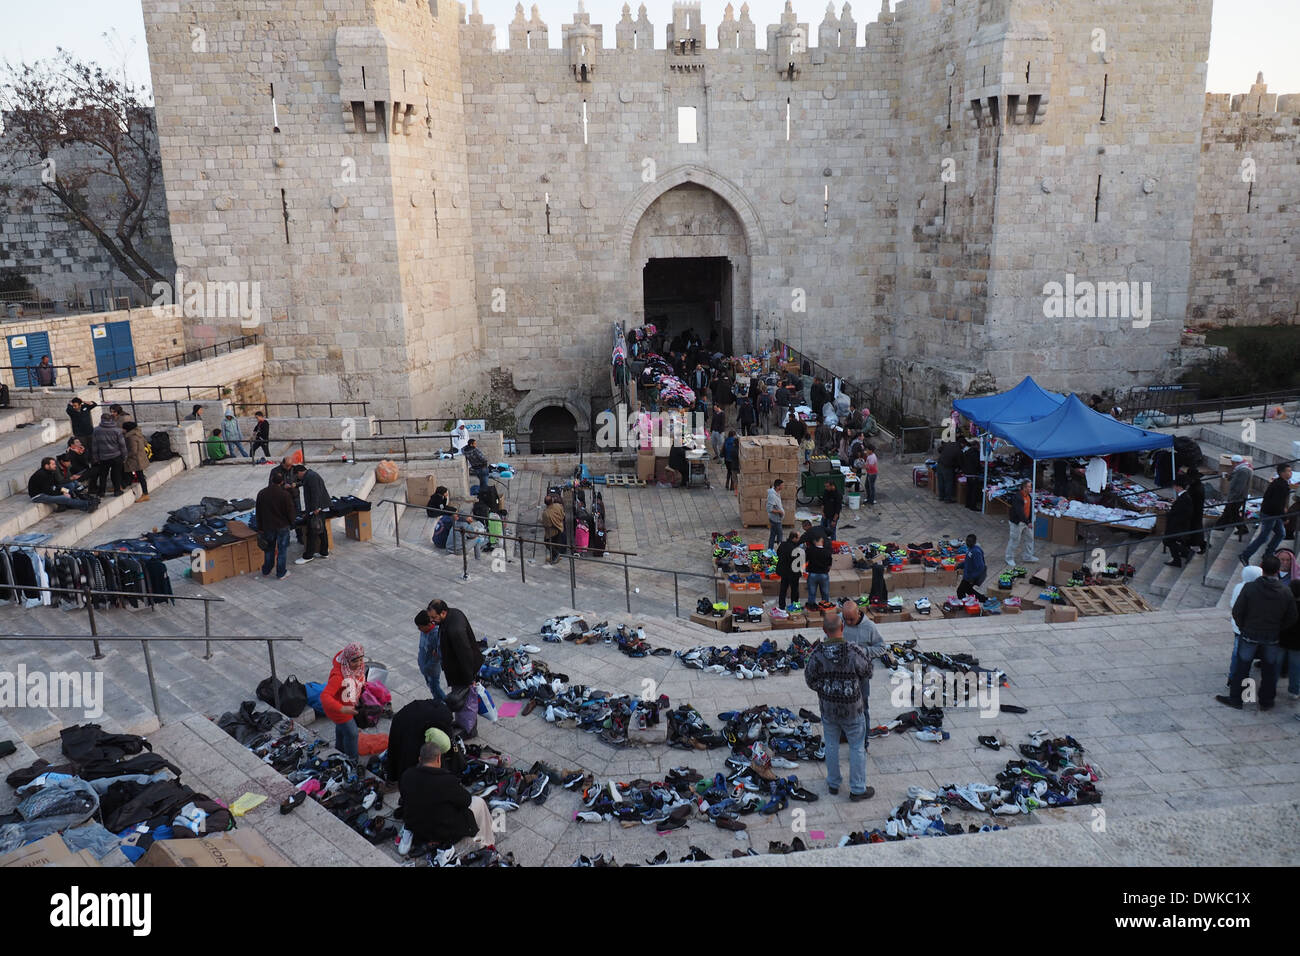 Marchands vendant des chaussures et autres vêtements à l'extérieur de la Porte de Damas de la vieille ville de Jérusalem Banque D'Images